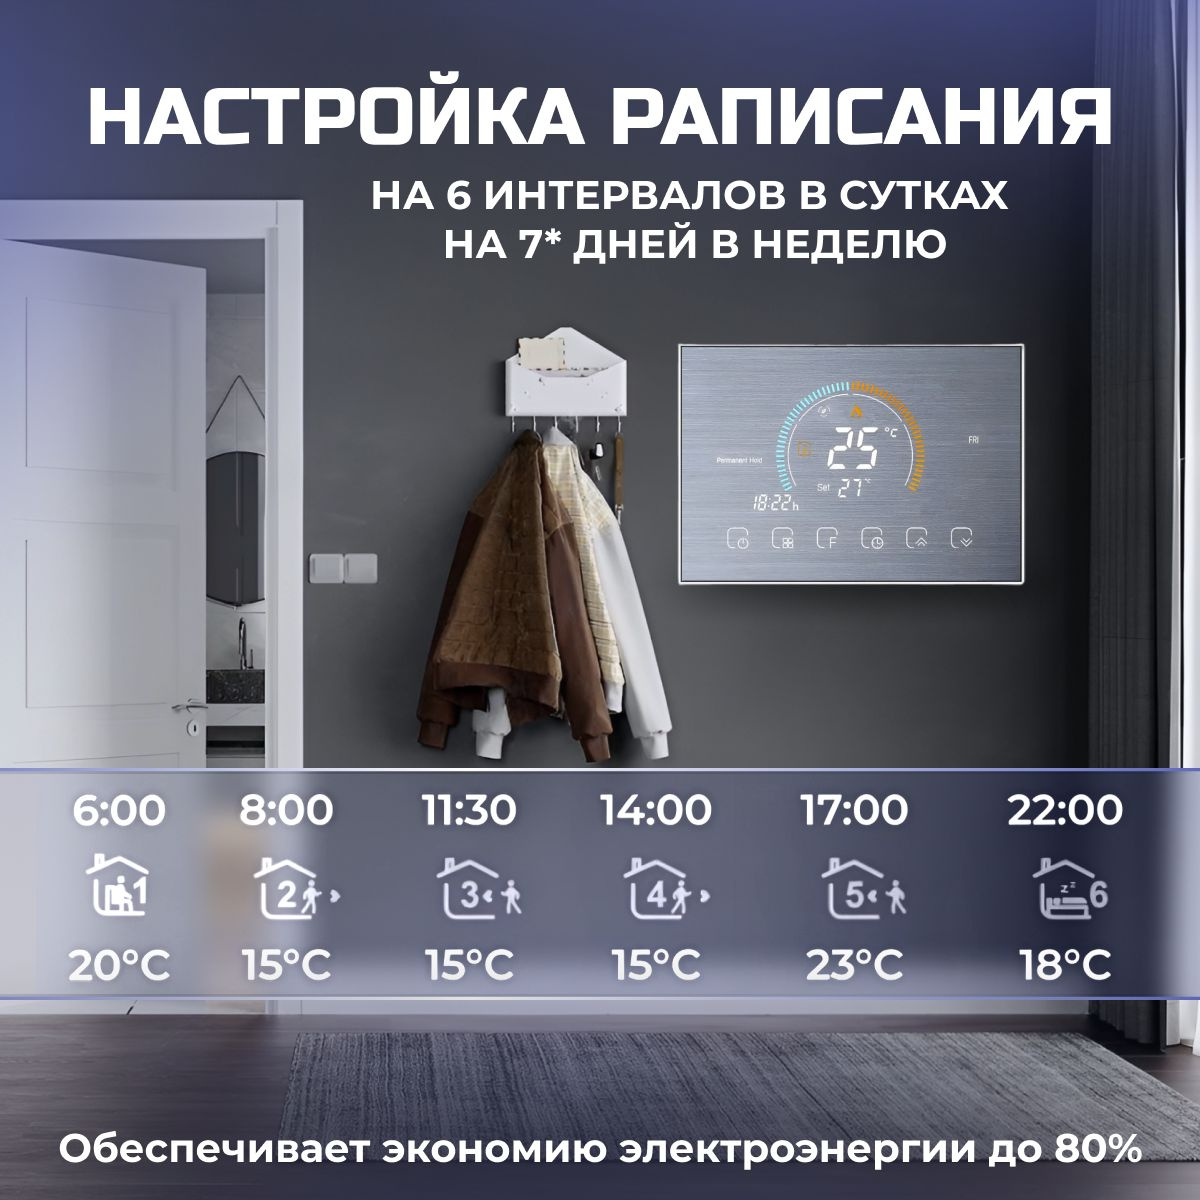 Экономия электроэнергии до 80%, 6 режимов программирования, температура увеличивается до зафиксированного значения, если в помещении есть люди.